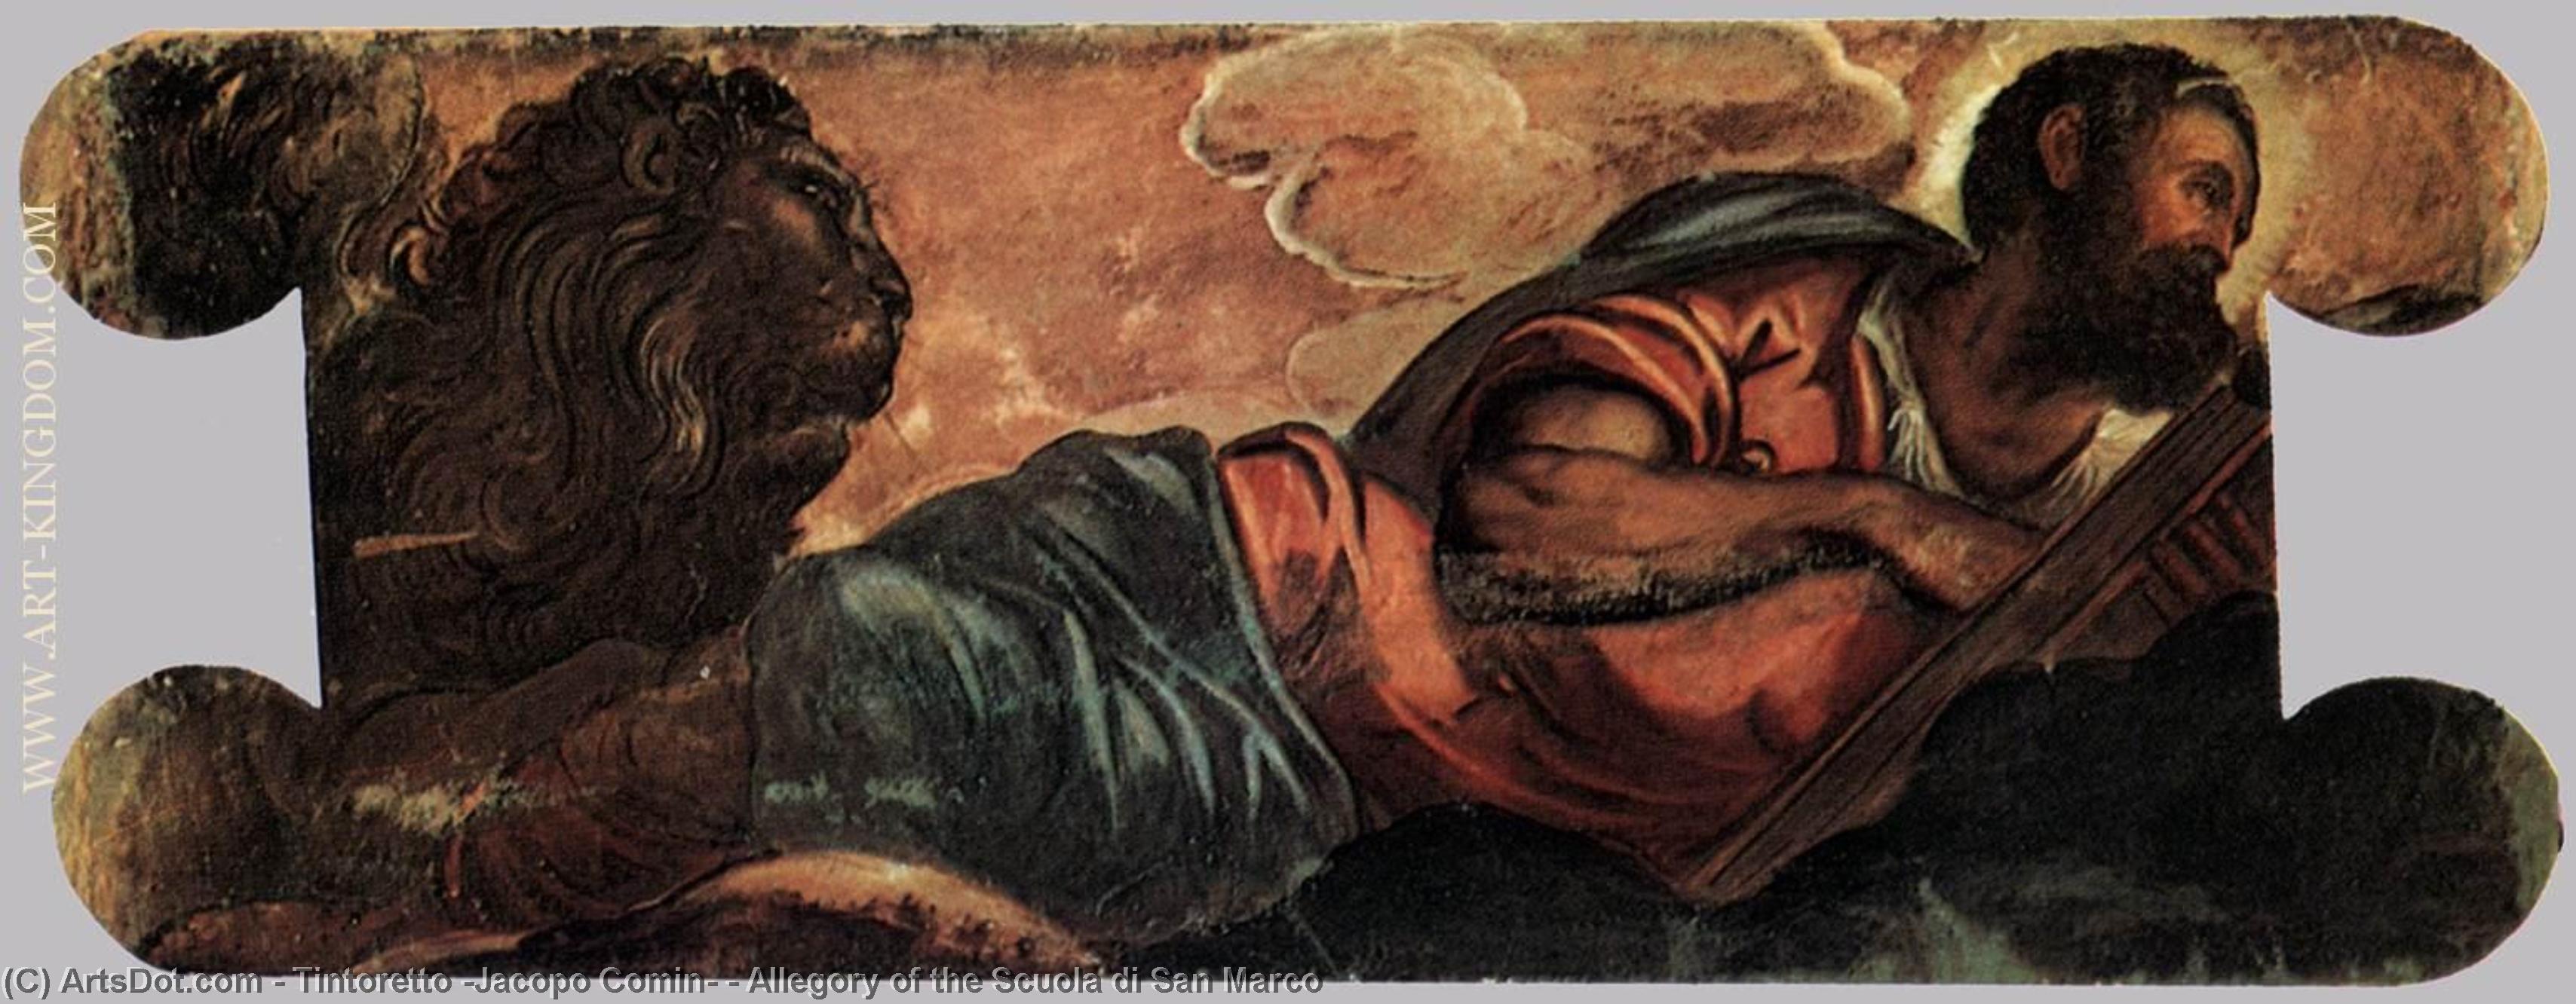 WikiOO.org - Encyclopedia of Fine Arts - Maleri, Artwork Tintoretto (Jacopo Comin) - Allegory of the Scuola di San Marco